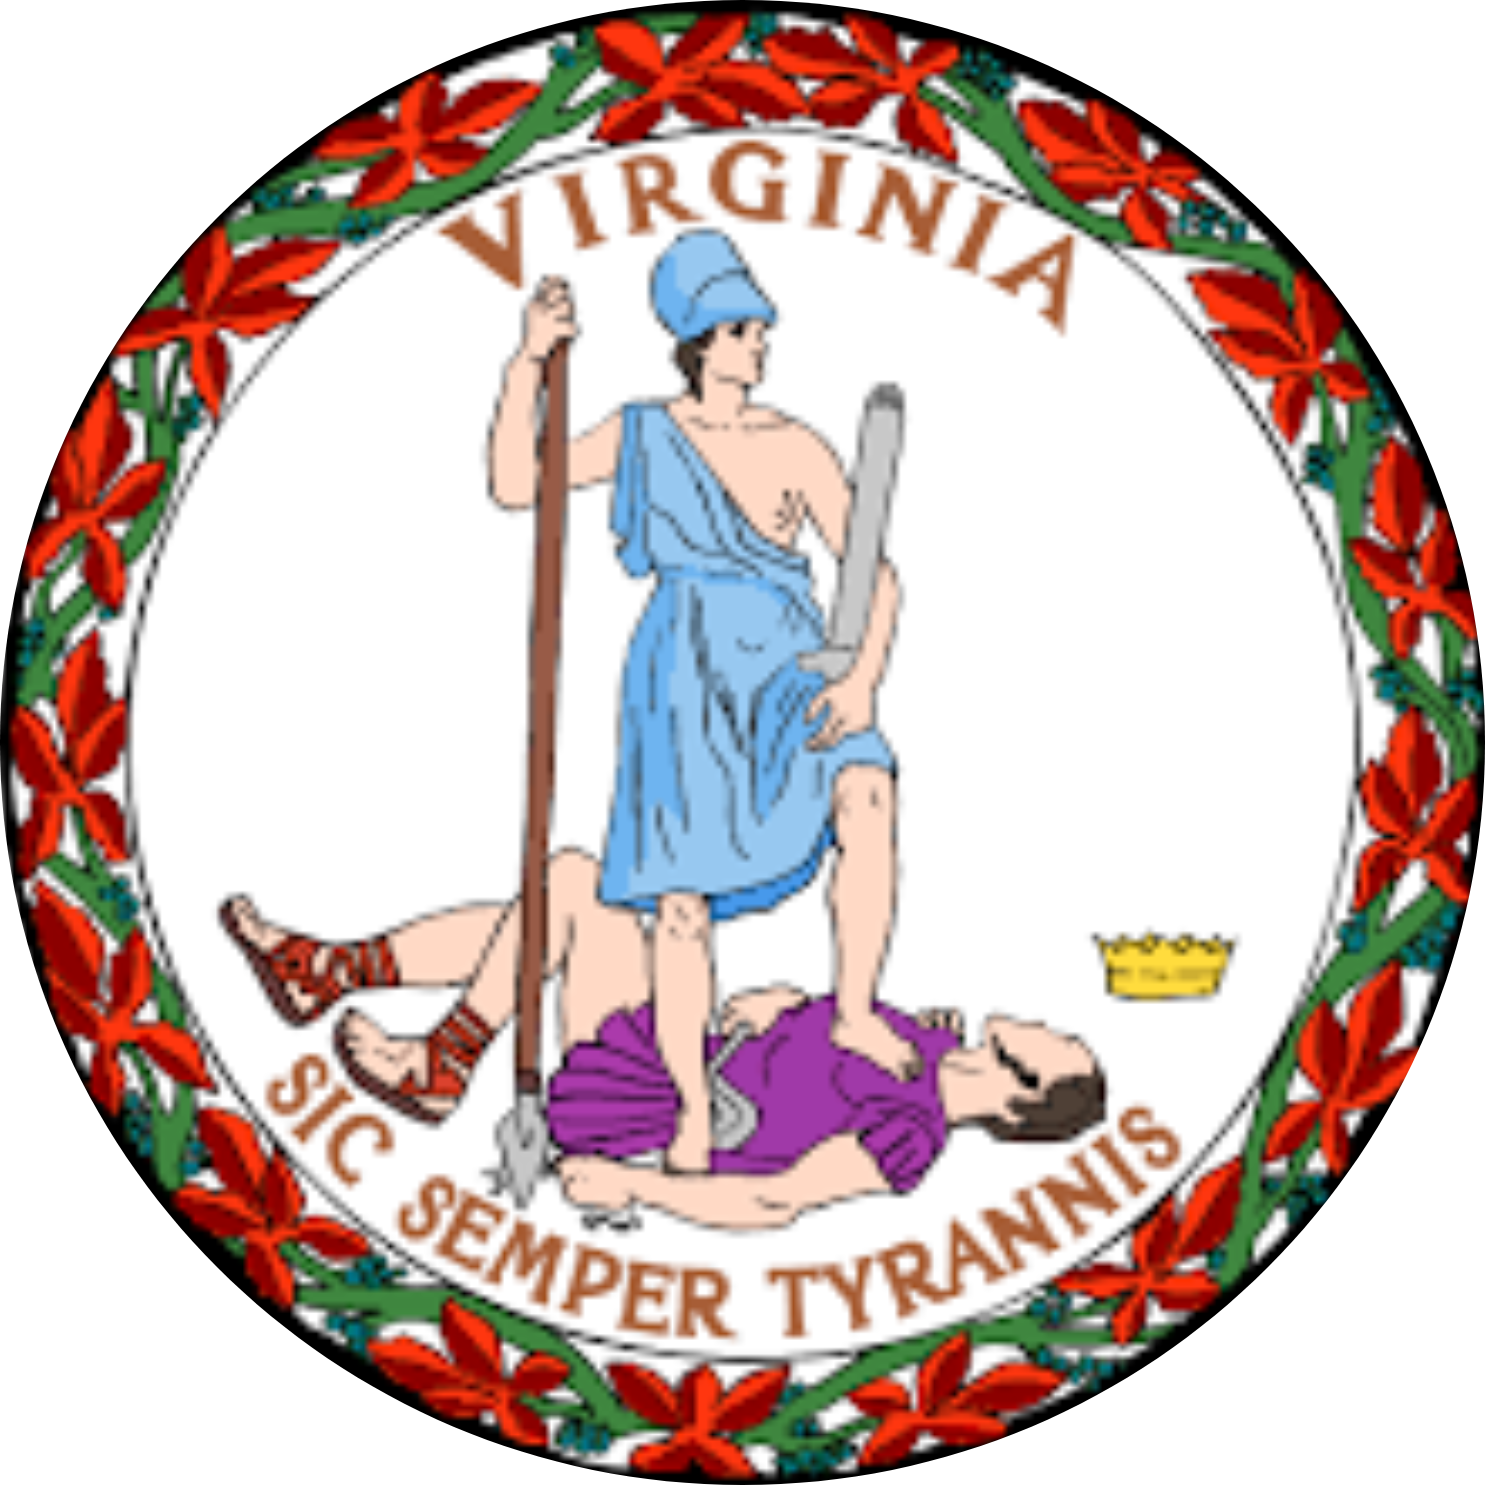 virginia state logo